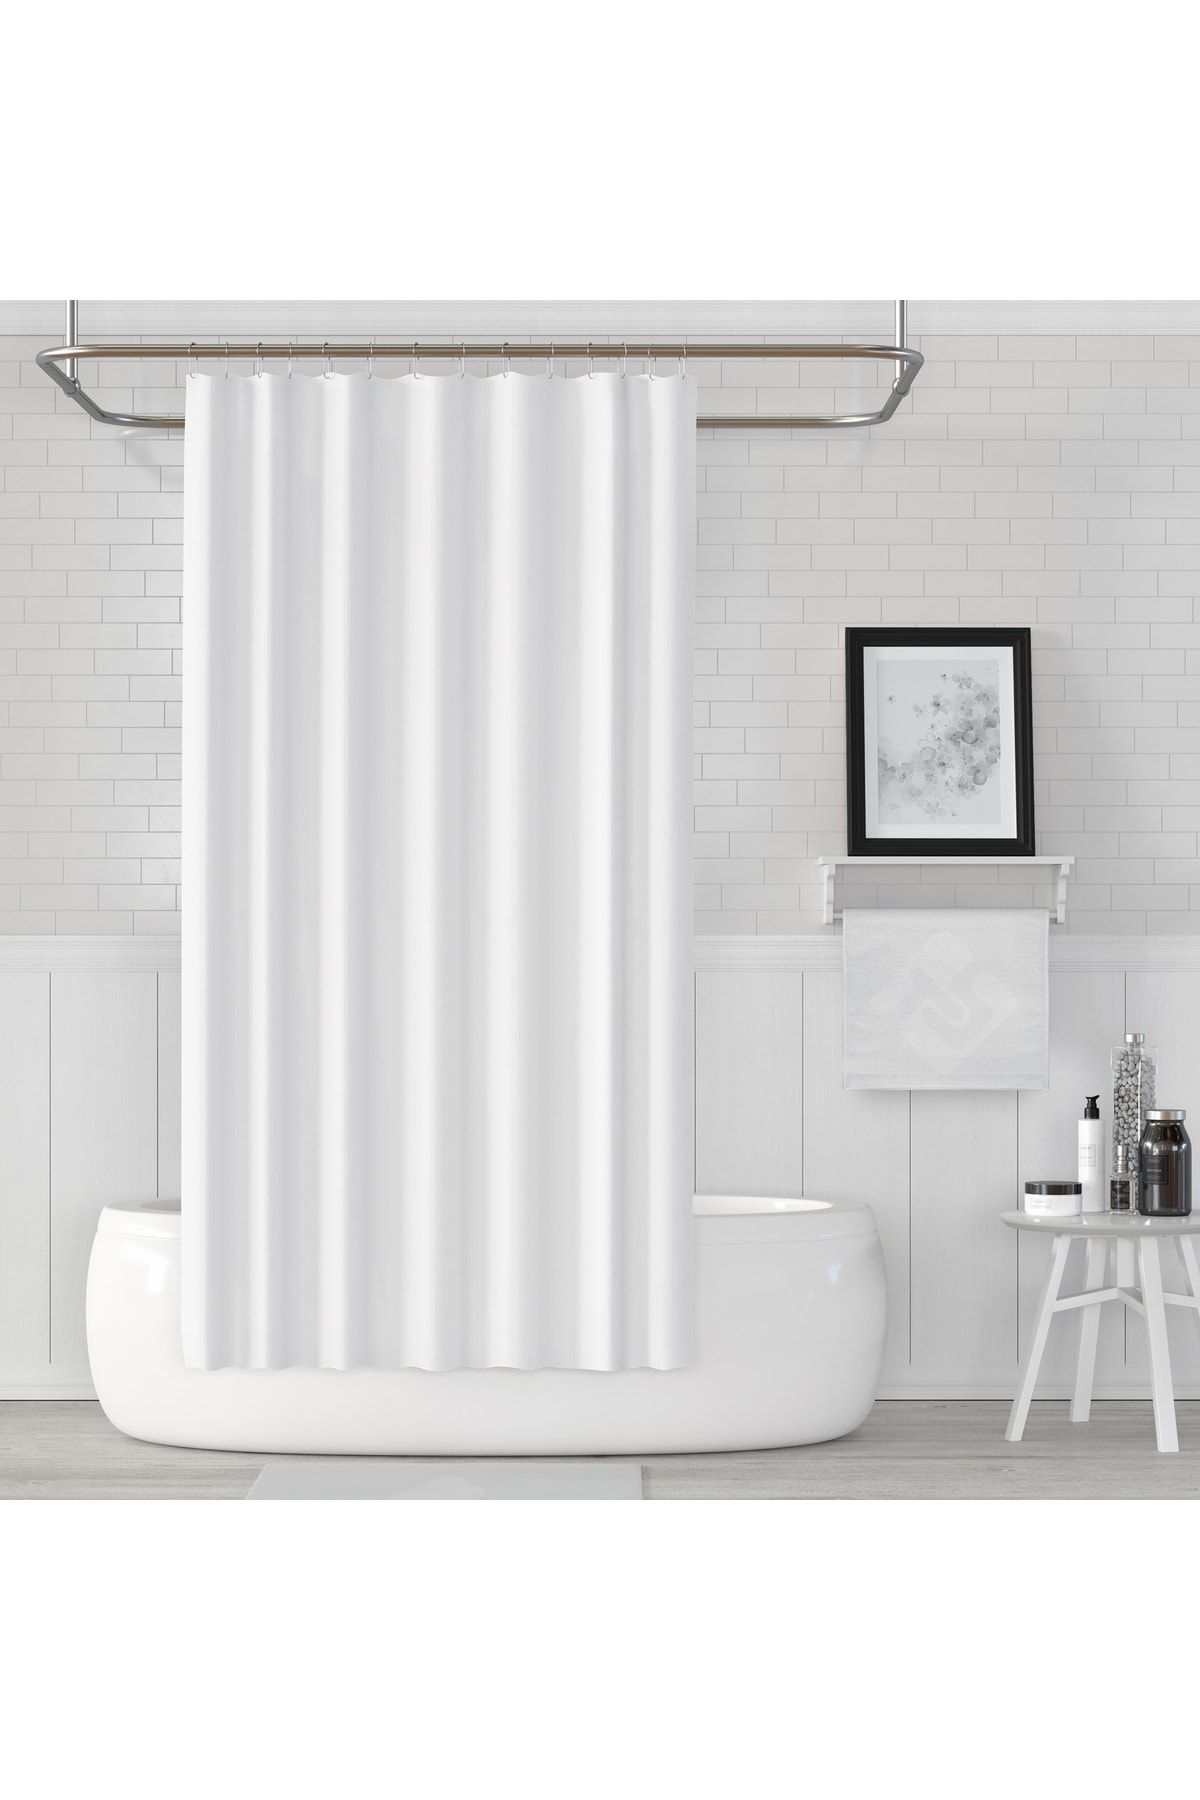 Jackline Beyaz Banyo Perdesi Yerli Üretim Duş Perdesi 12 Adet Plastik C-halkalı Banyo Duş Perdesi